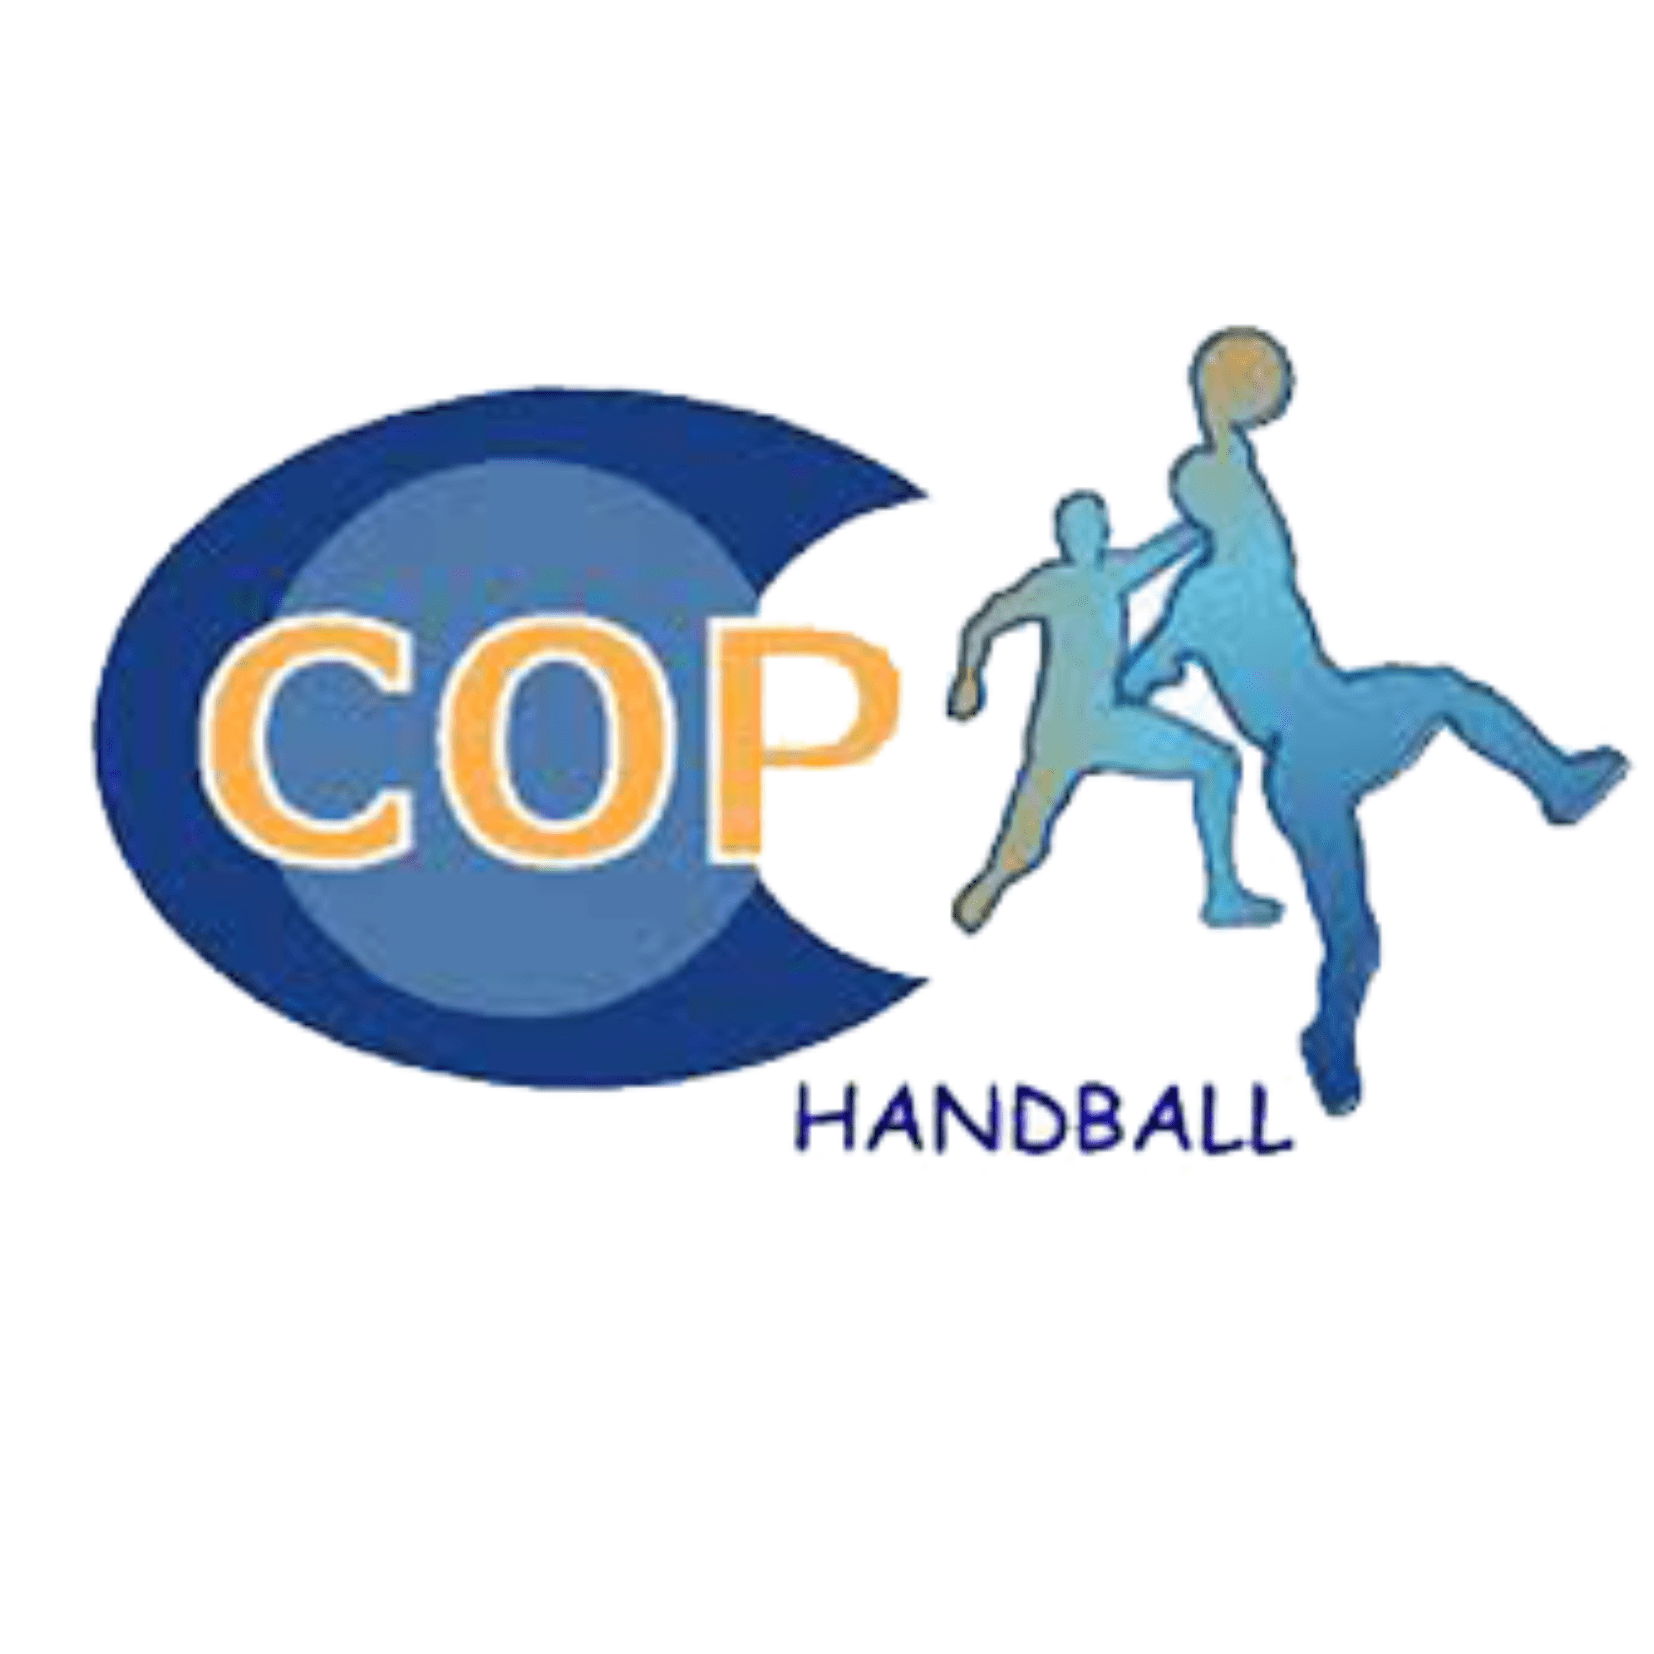 cop handball boutique en ligne - Maboutiqueclub.fr